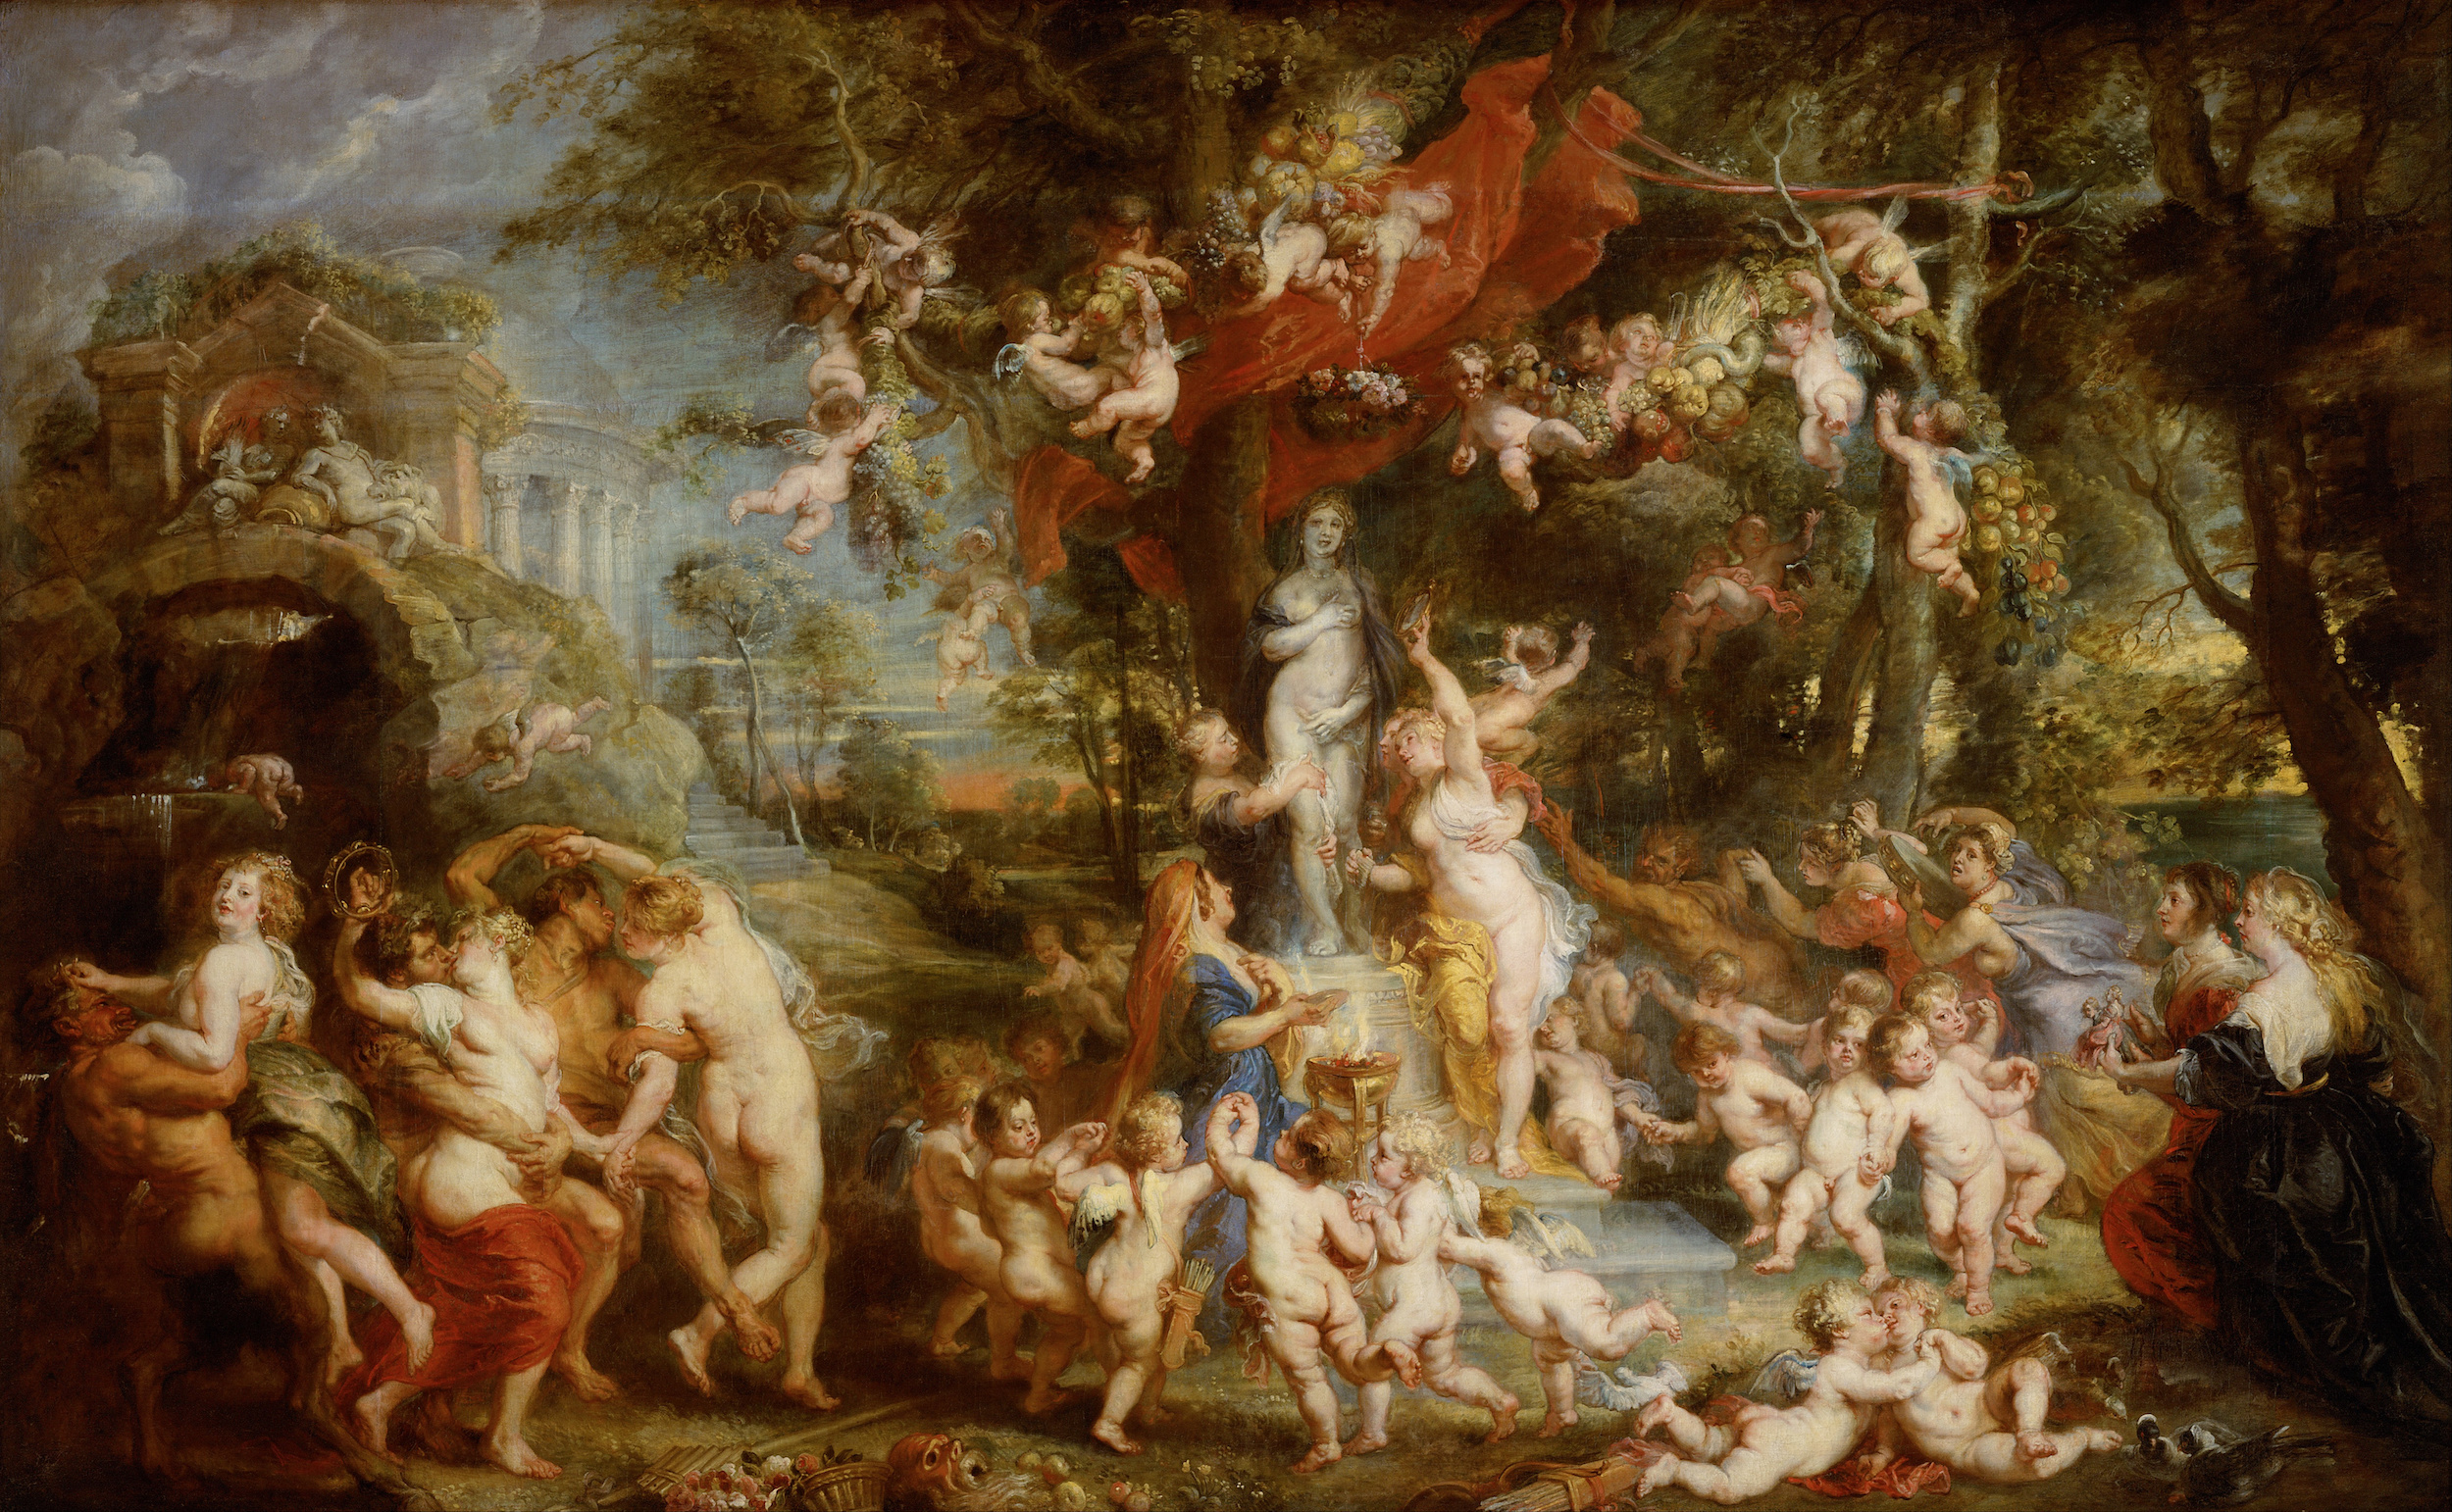 維納斯的盛宴 by Peter Paul Rubens - 1636/37年左右 - 350 x 217 cm 